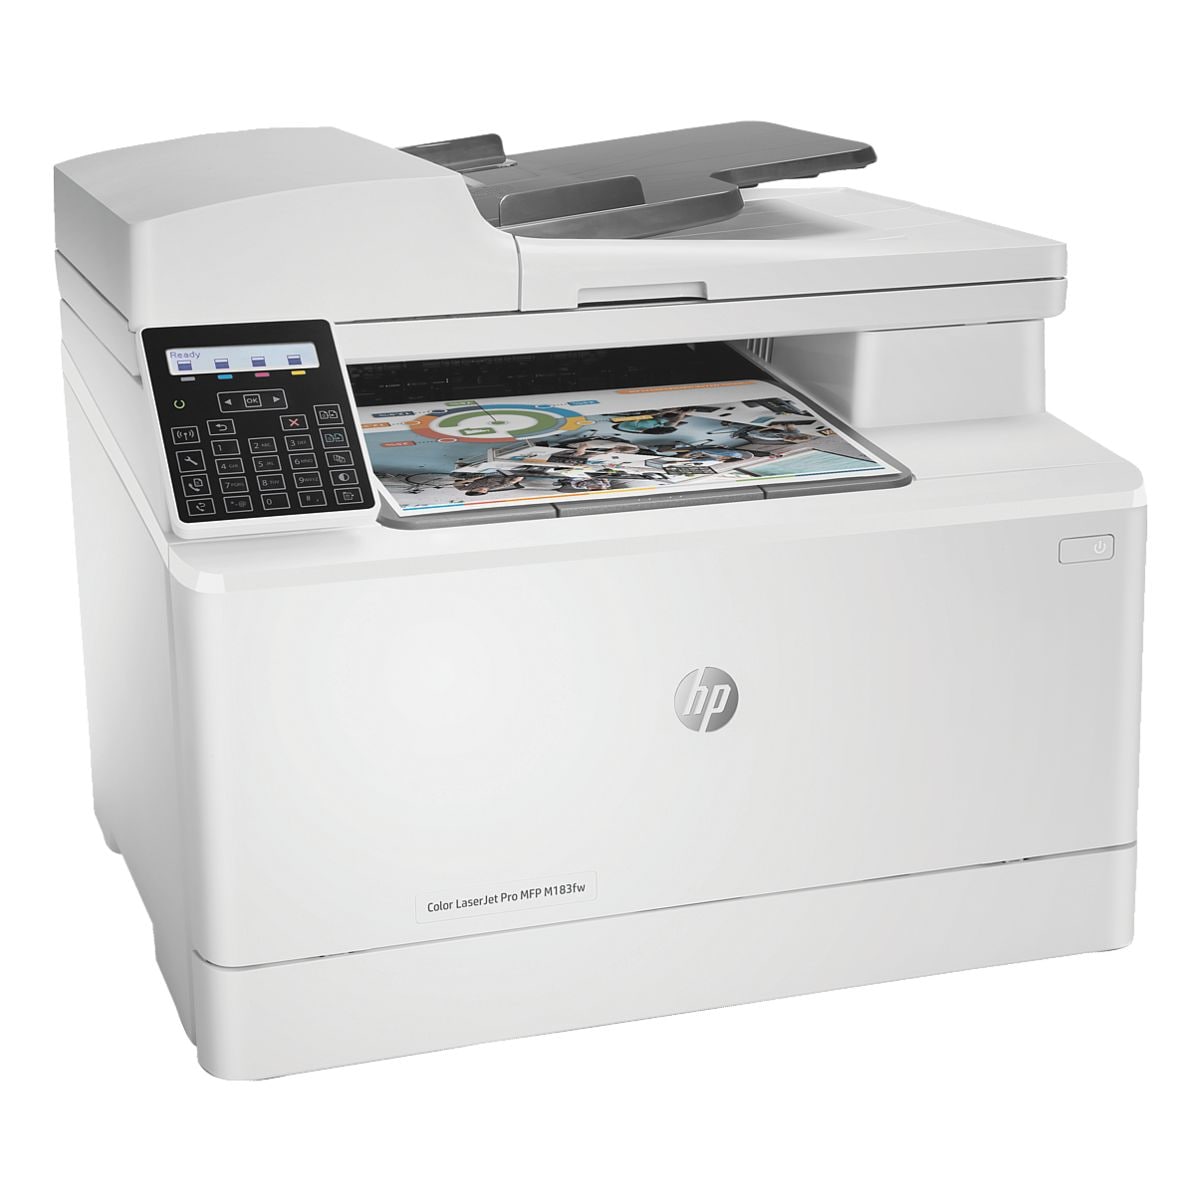 HP Color LaserJet Pro MFP M183fw Multifunktionsdrucker, A4 Farb-Laserdrucker, mit LAN und WLAN